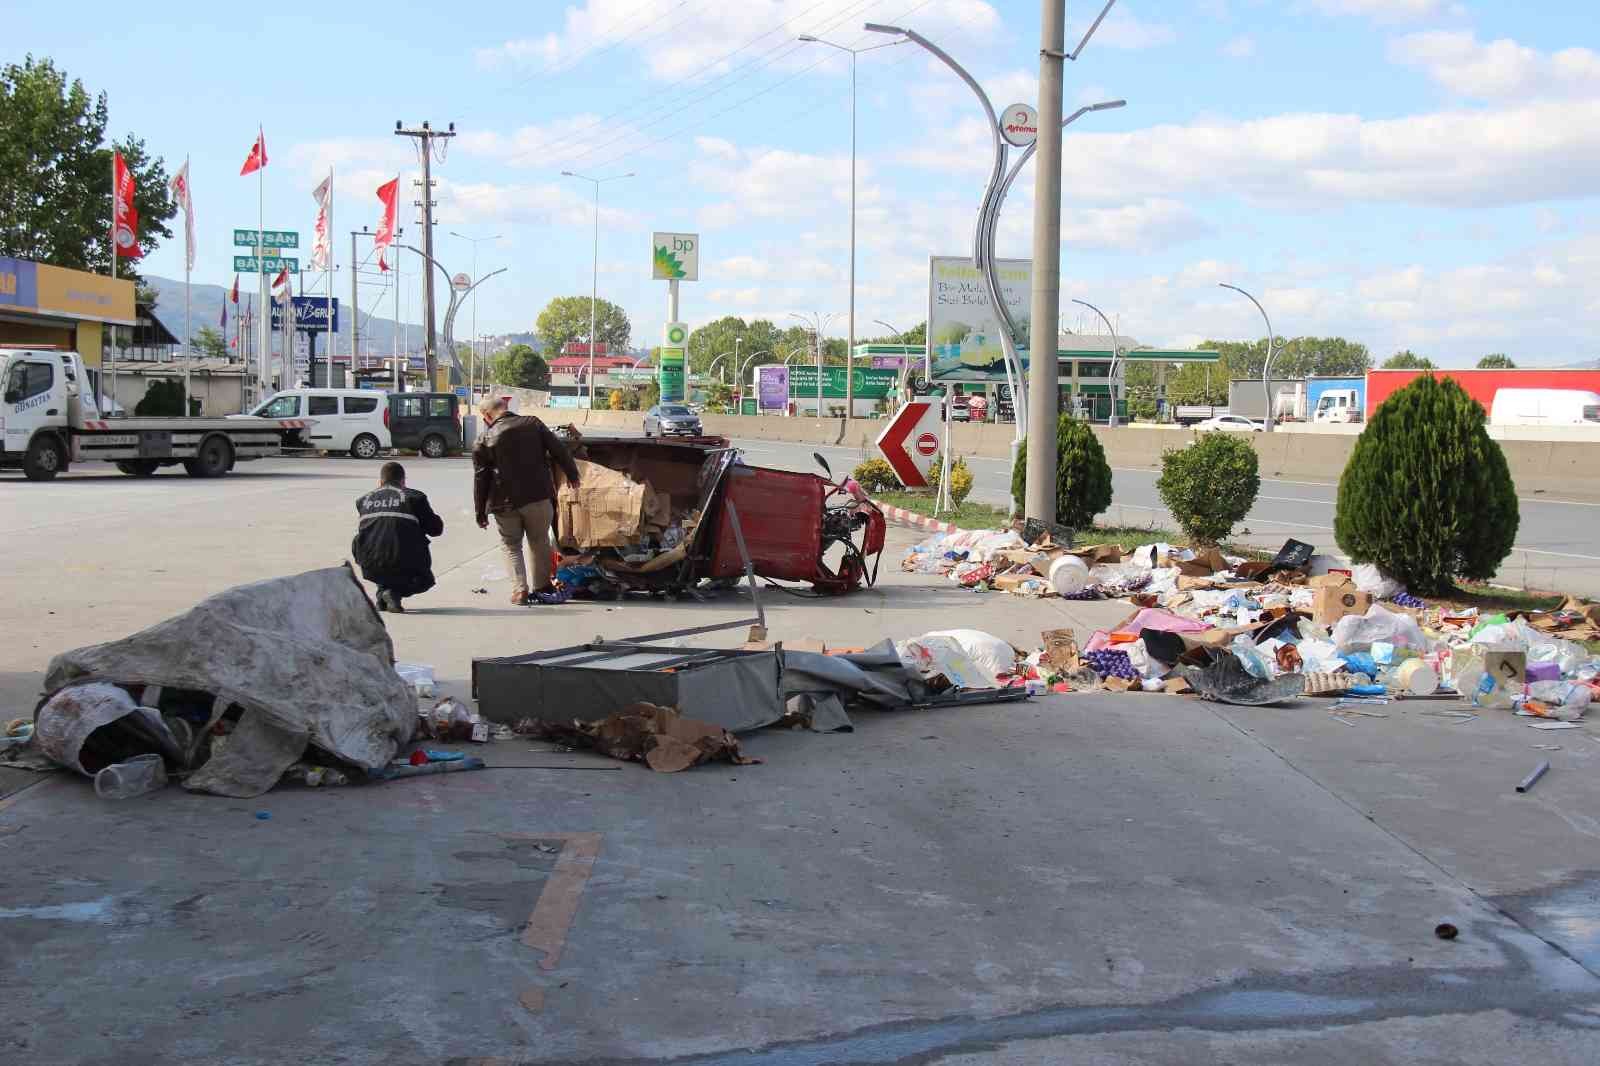 Petrol istasyonuna dalan taksi, hurda aracı ve otomobile çarptı: 1 ölü #kocaeli